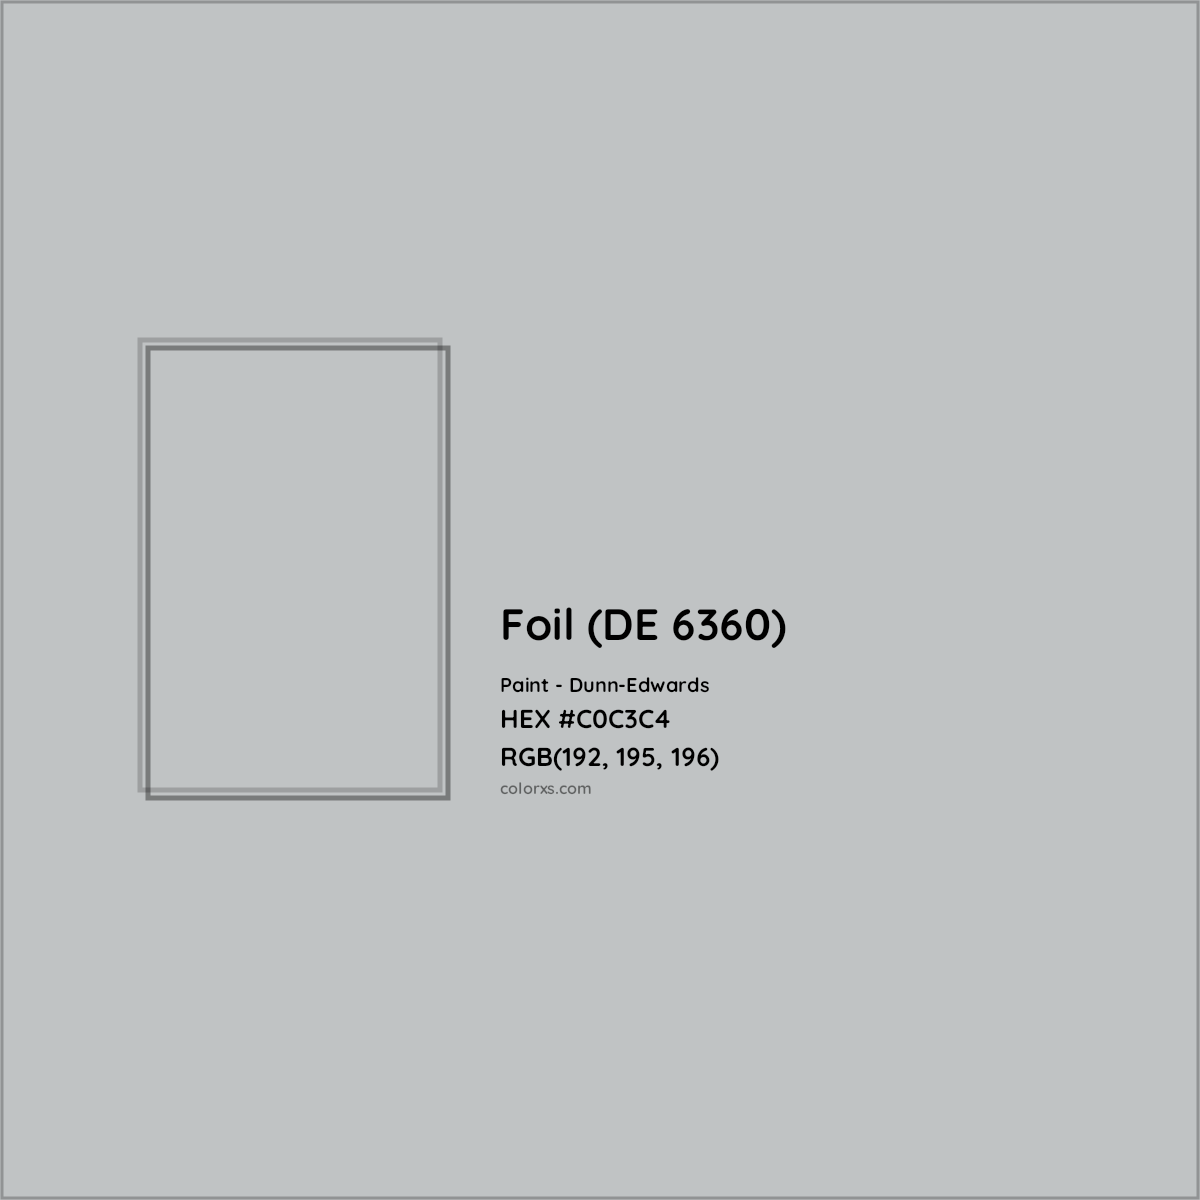 HEX #C0C3C4 Foil (DE 6360) Paint Dunn-Edwards - Color Code